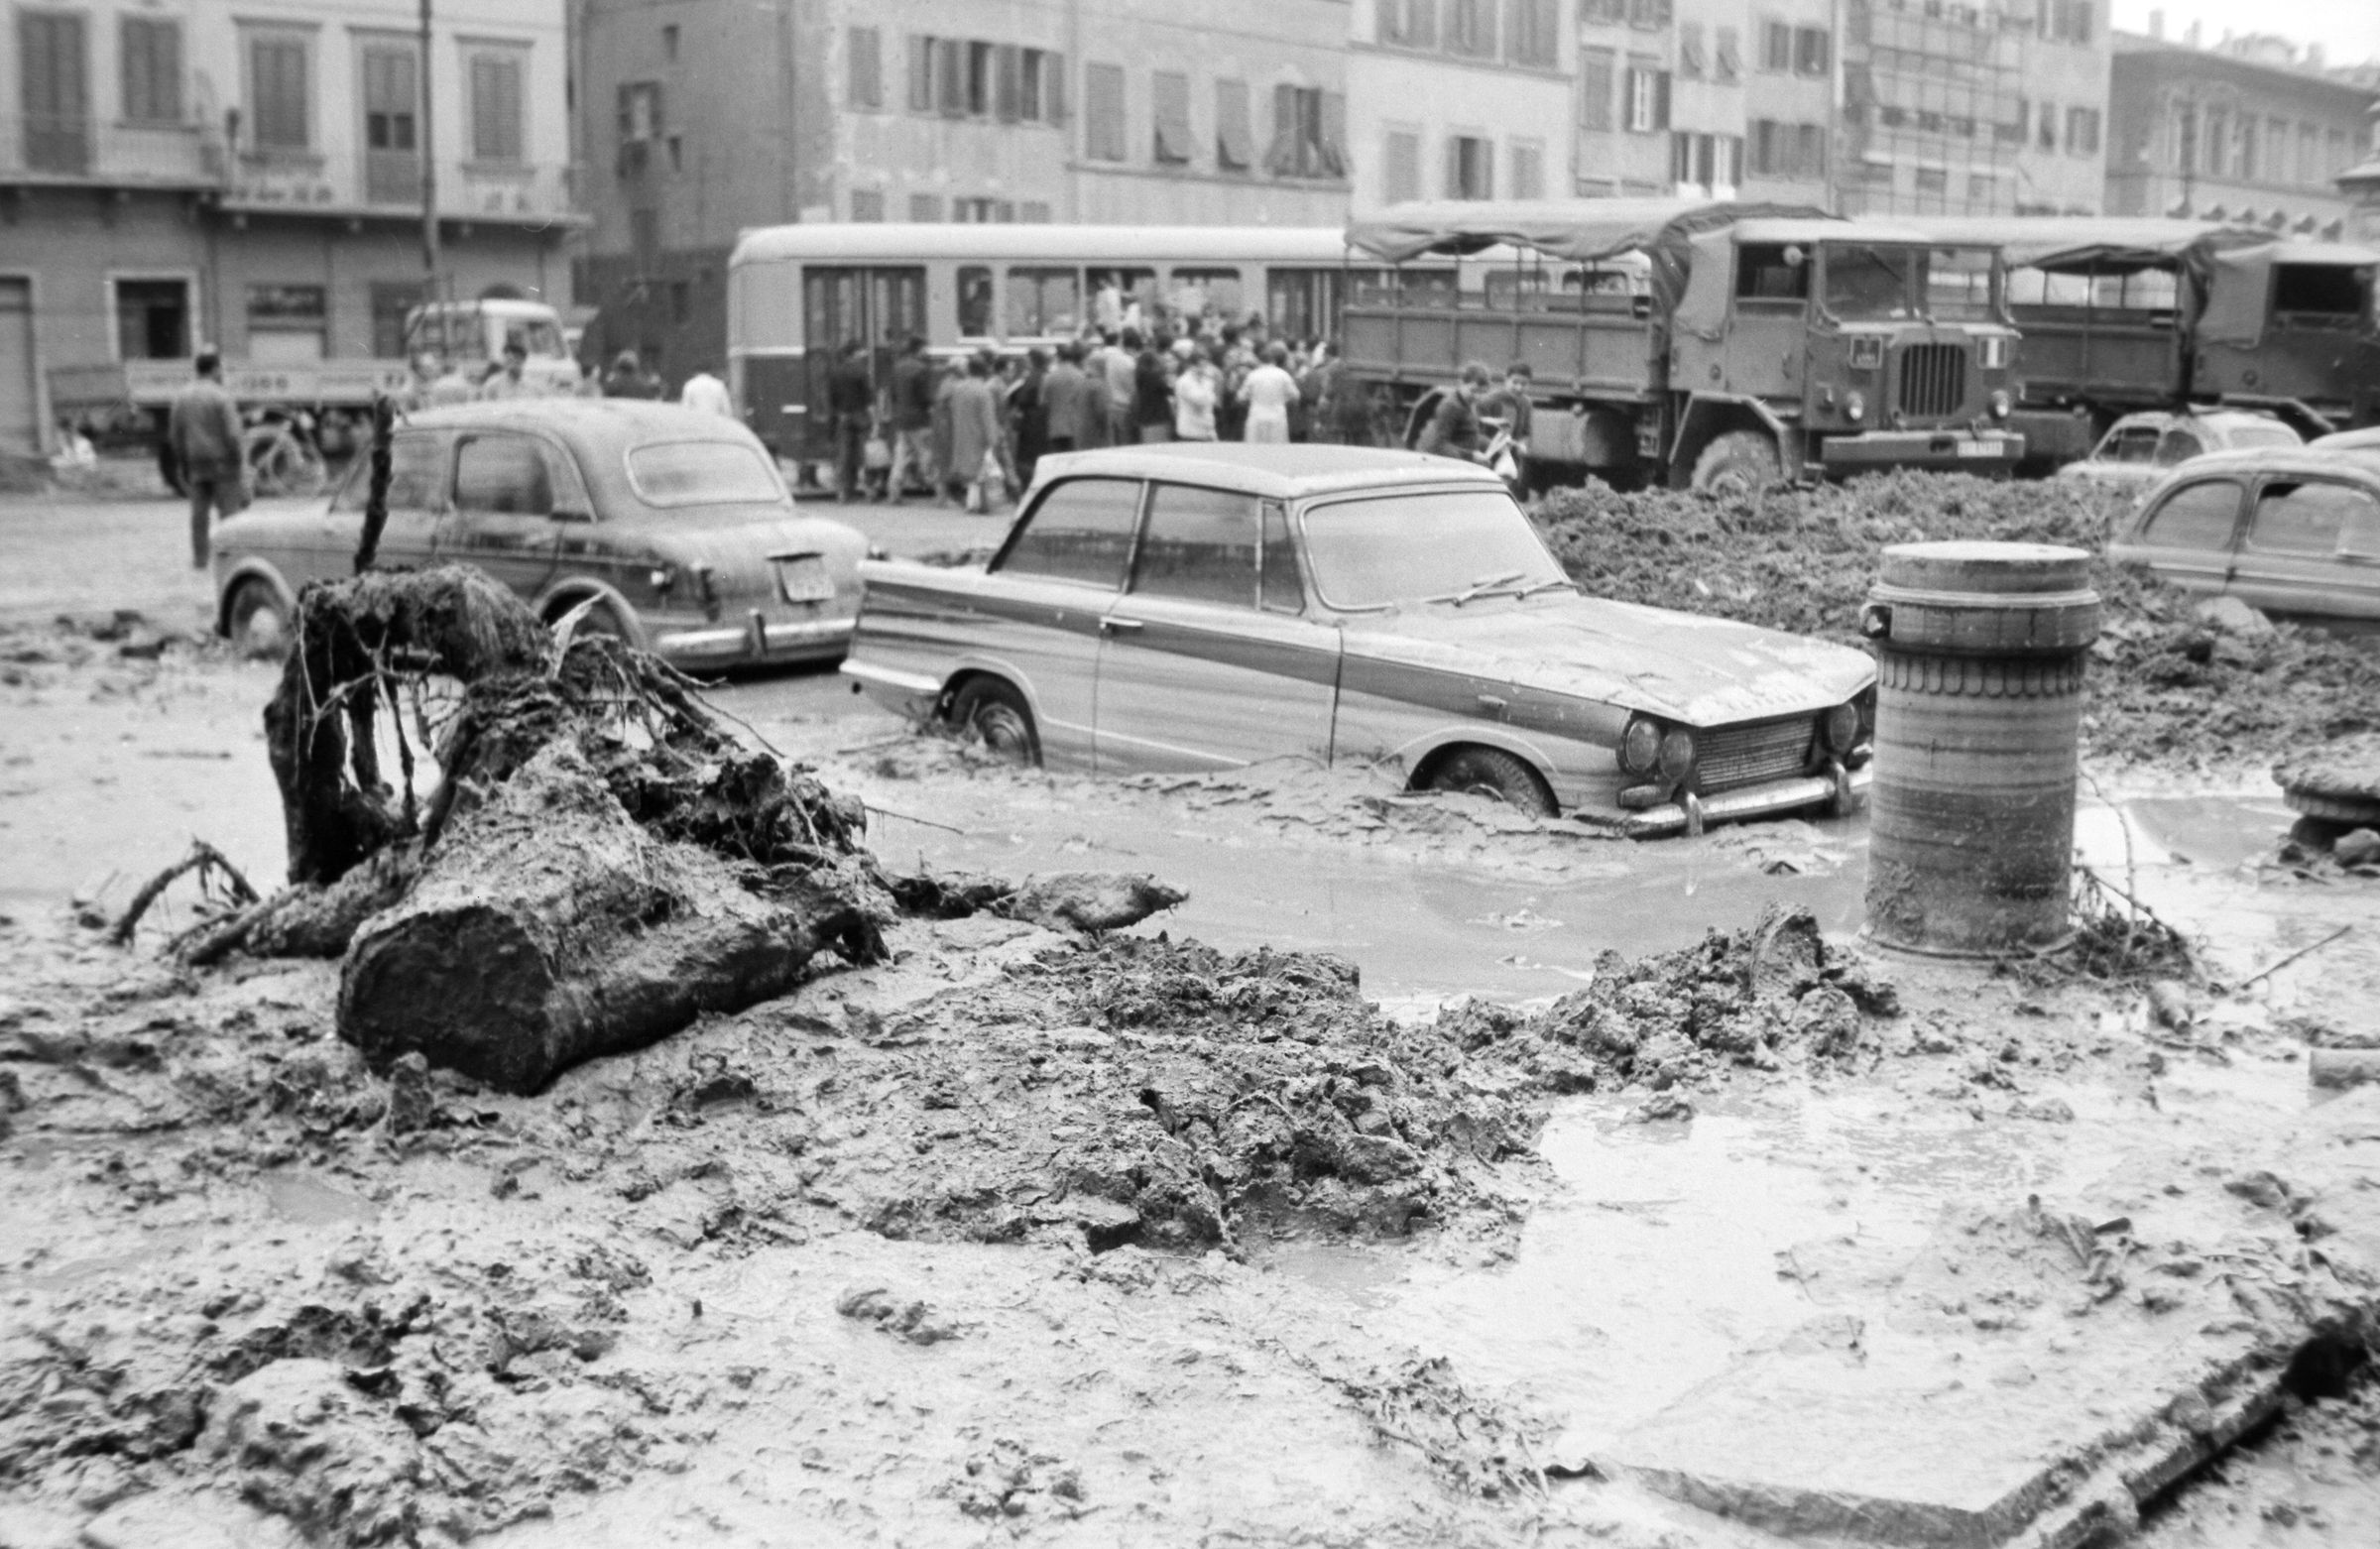 Fotografo non identificato, Firenze - Piazza S. Croce, automobili sommerse dal fango, 1966, gelatina ai sali d'argento/pellicola, 35mm, R001790